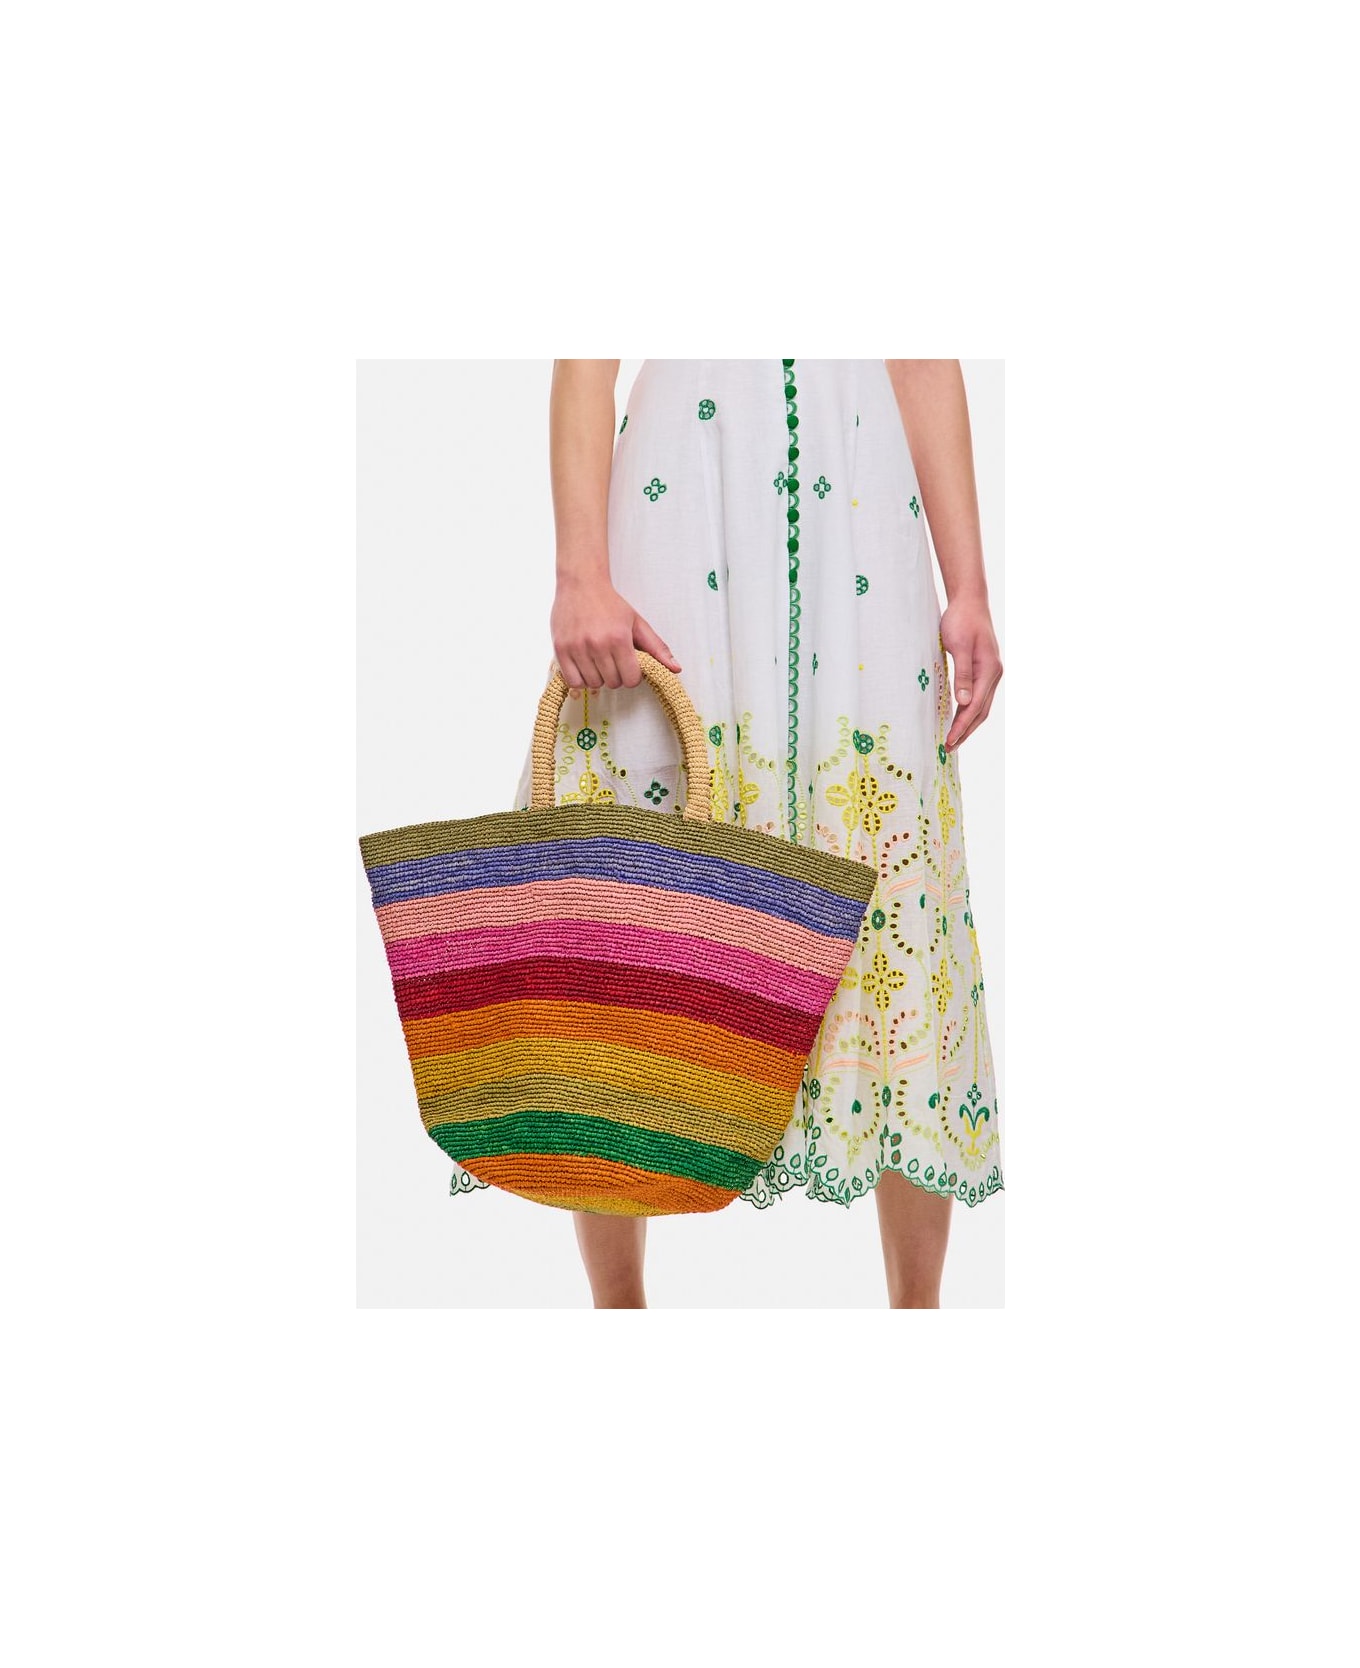 Manebi Striped Raffia Tote Bag - Multicolor